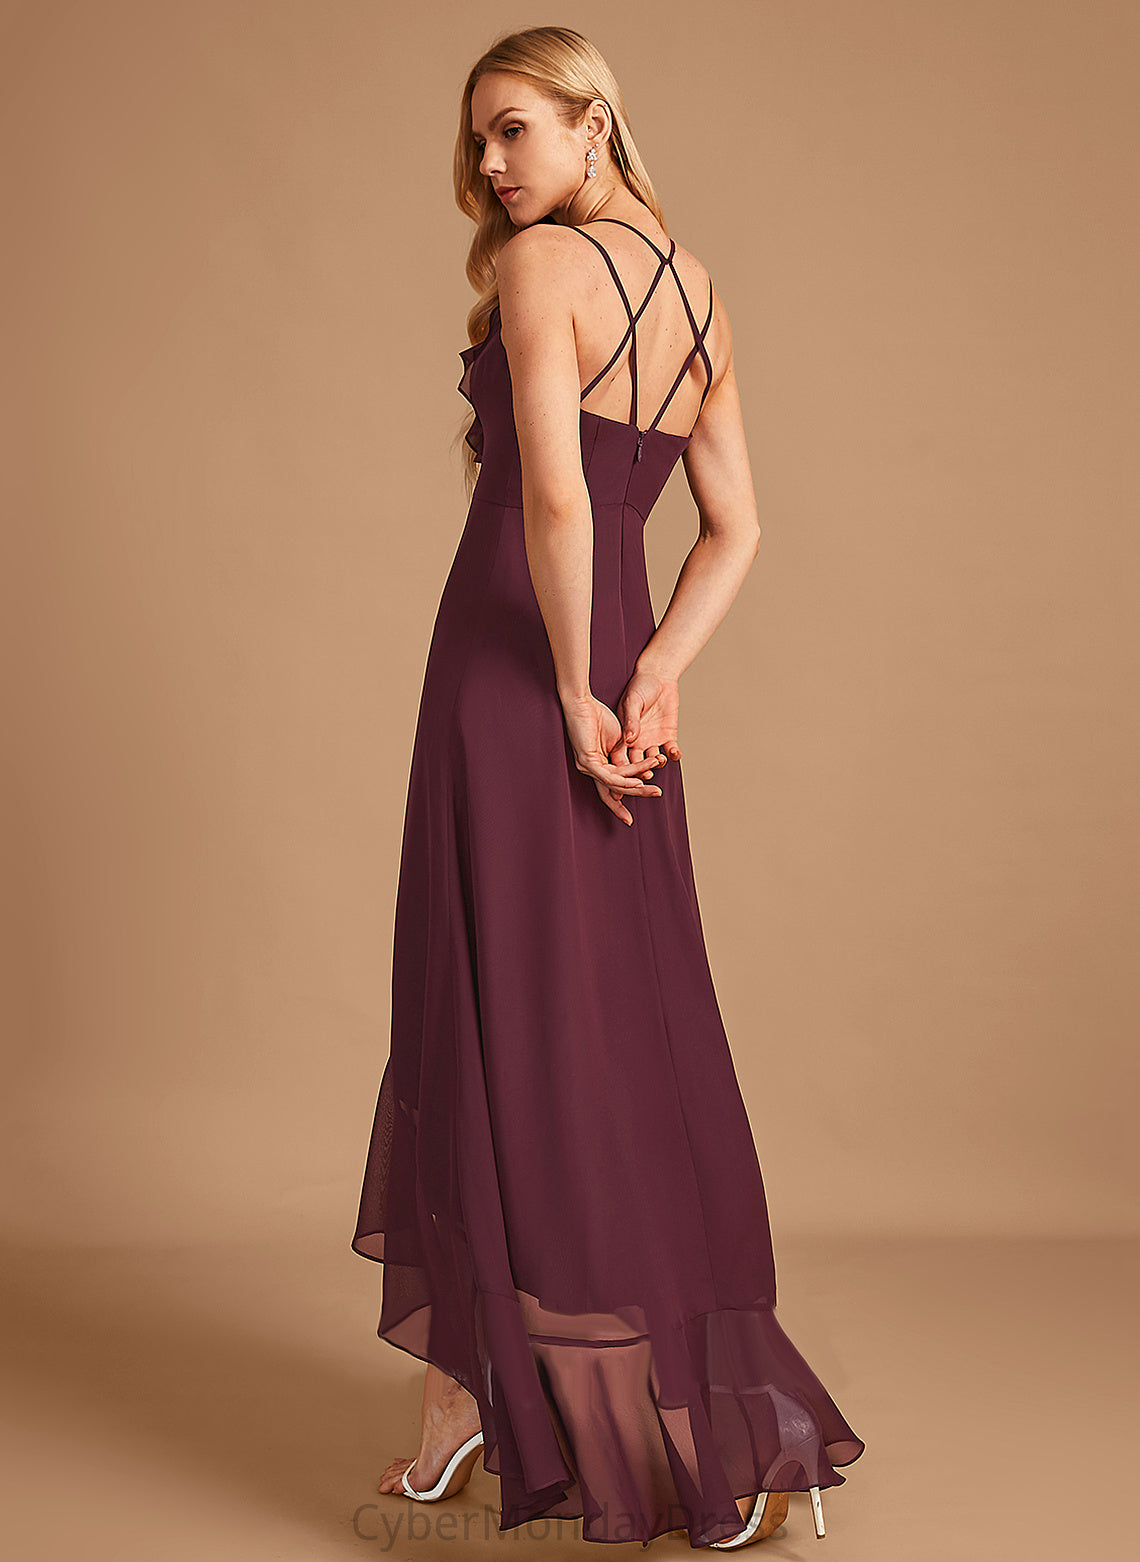 A-Line SplitFront Ruffle Fabric Silhouette Embellishment Asymmetrical Neckline V-neck Length Lizeth Scoop Bridesmaid Dresses